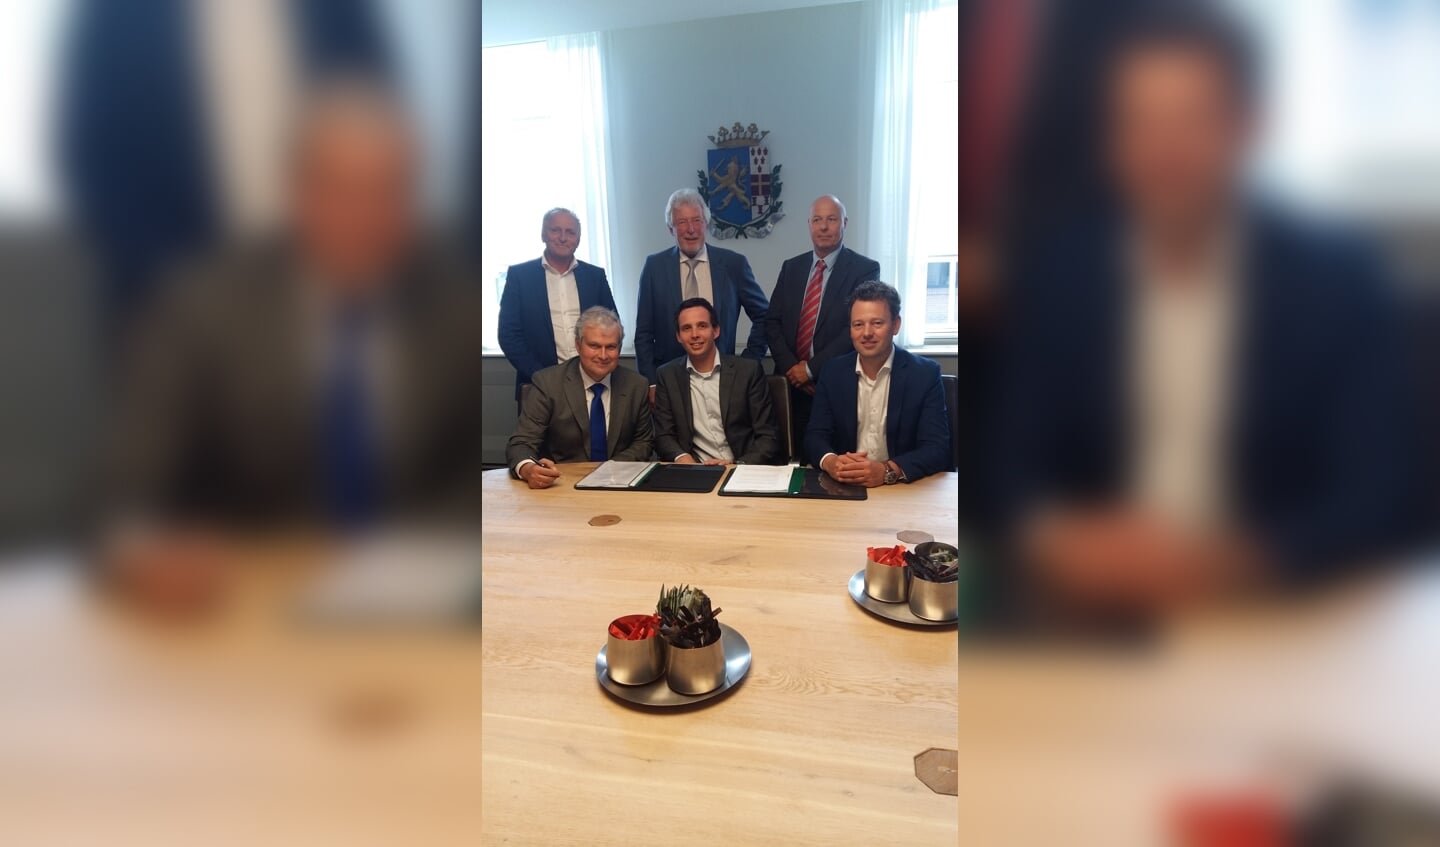 Wethouder Wim Oosterwijk, Wouter van den Top, Henk van de Kolk (voorste rij zittend) en Wilgo van de Mheen, Cor Vos, en Douwe Jan Tilkema (staand) plaatsen hun handtekening onder de exploitatieovereenkomst.